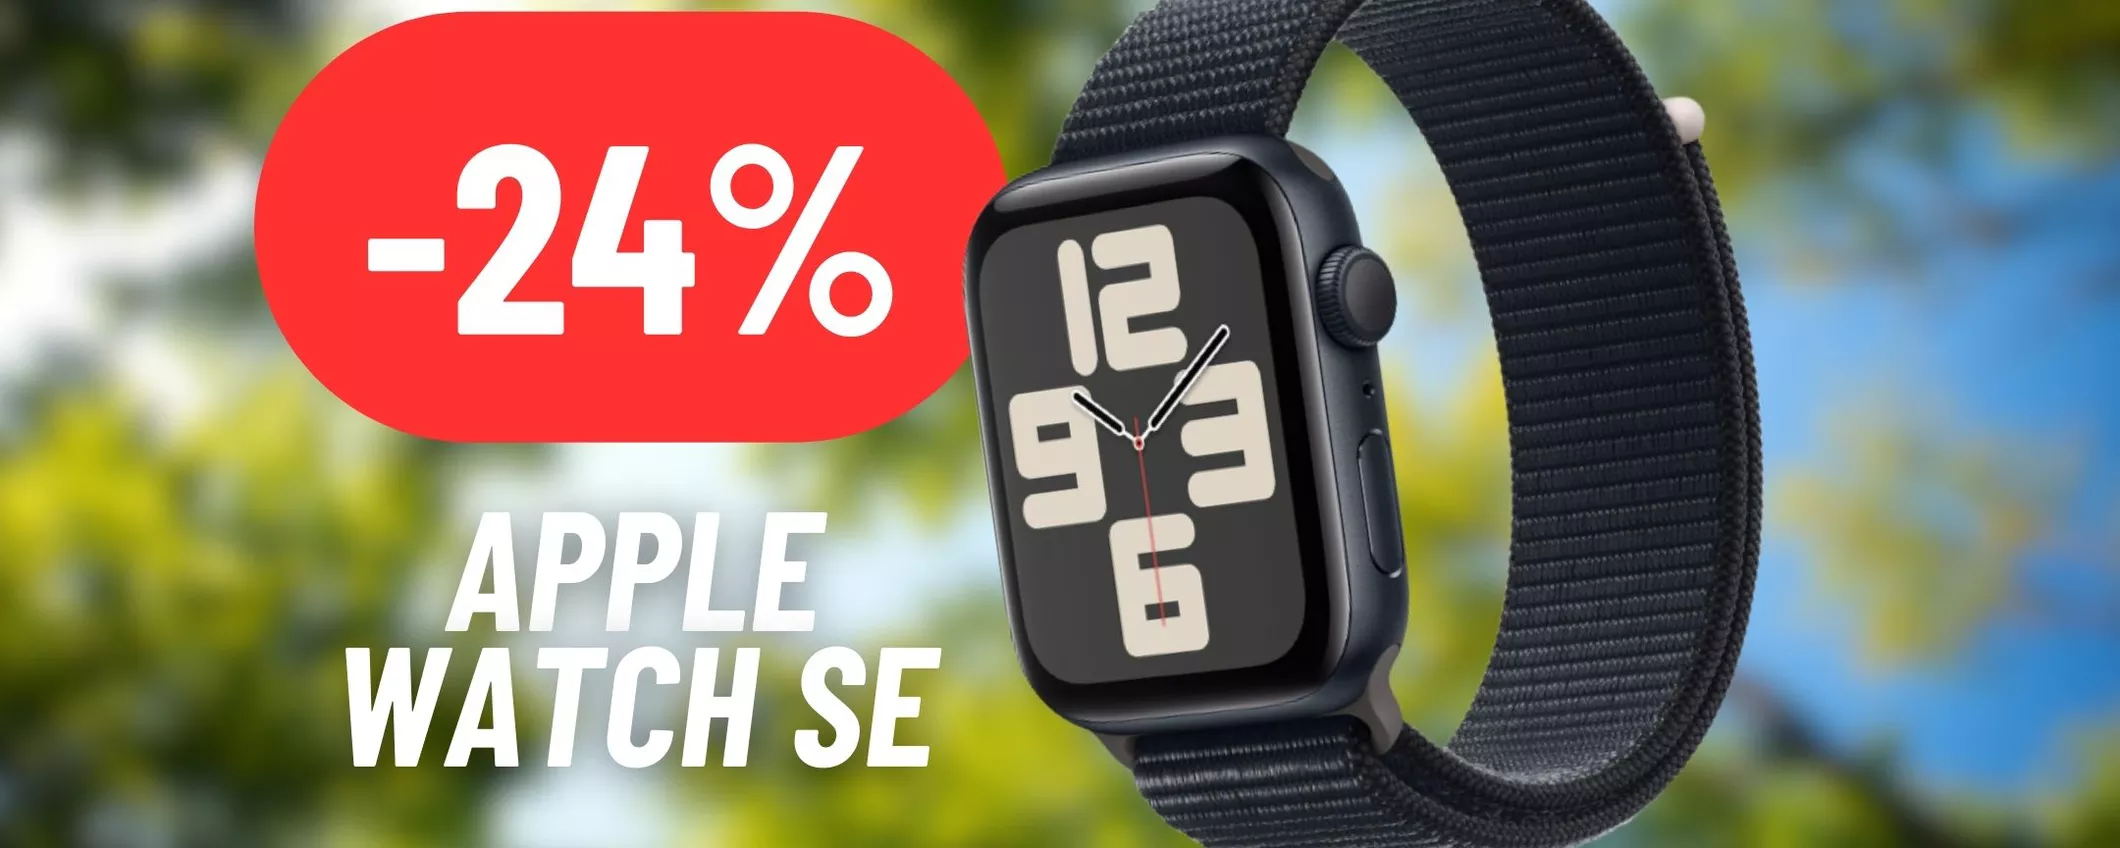 CROLLA IL PREZZO dell'Apple Watch SE su Amazon: scontatissimo!